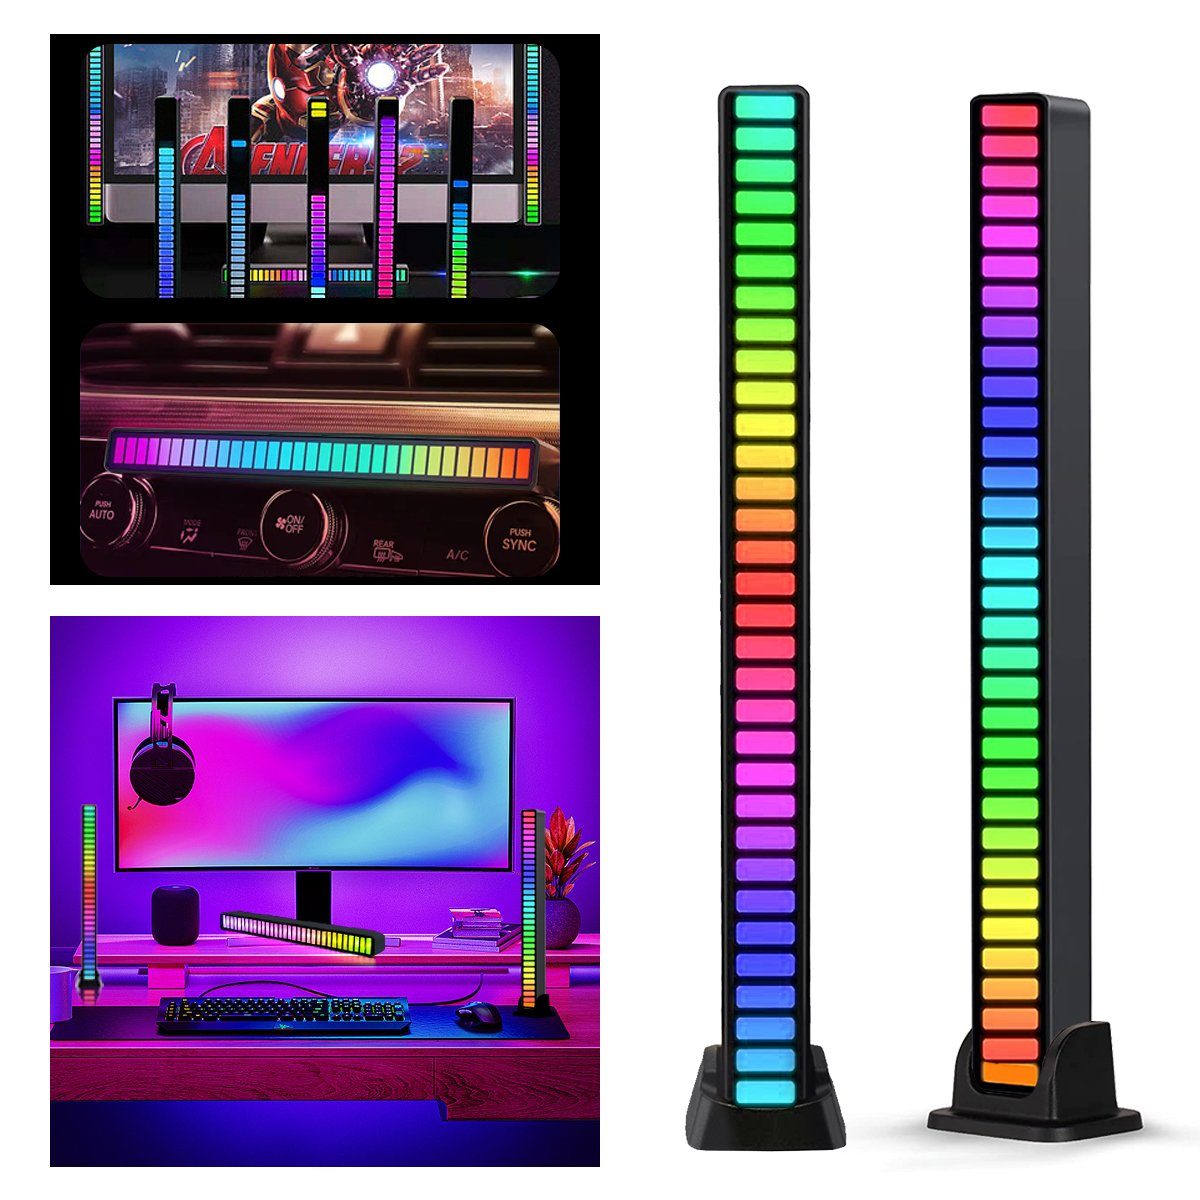 7Magic Smarte LED-Leuchte, RGB Licht LED Lampe 32 Bit Musik Level Anzeige